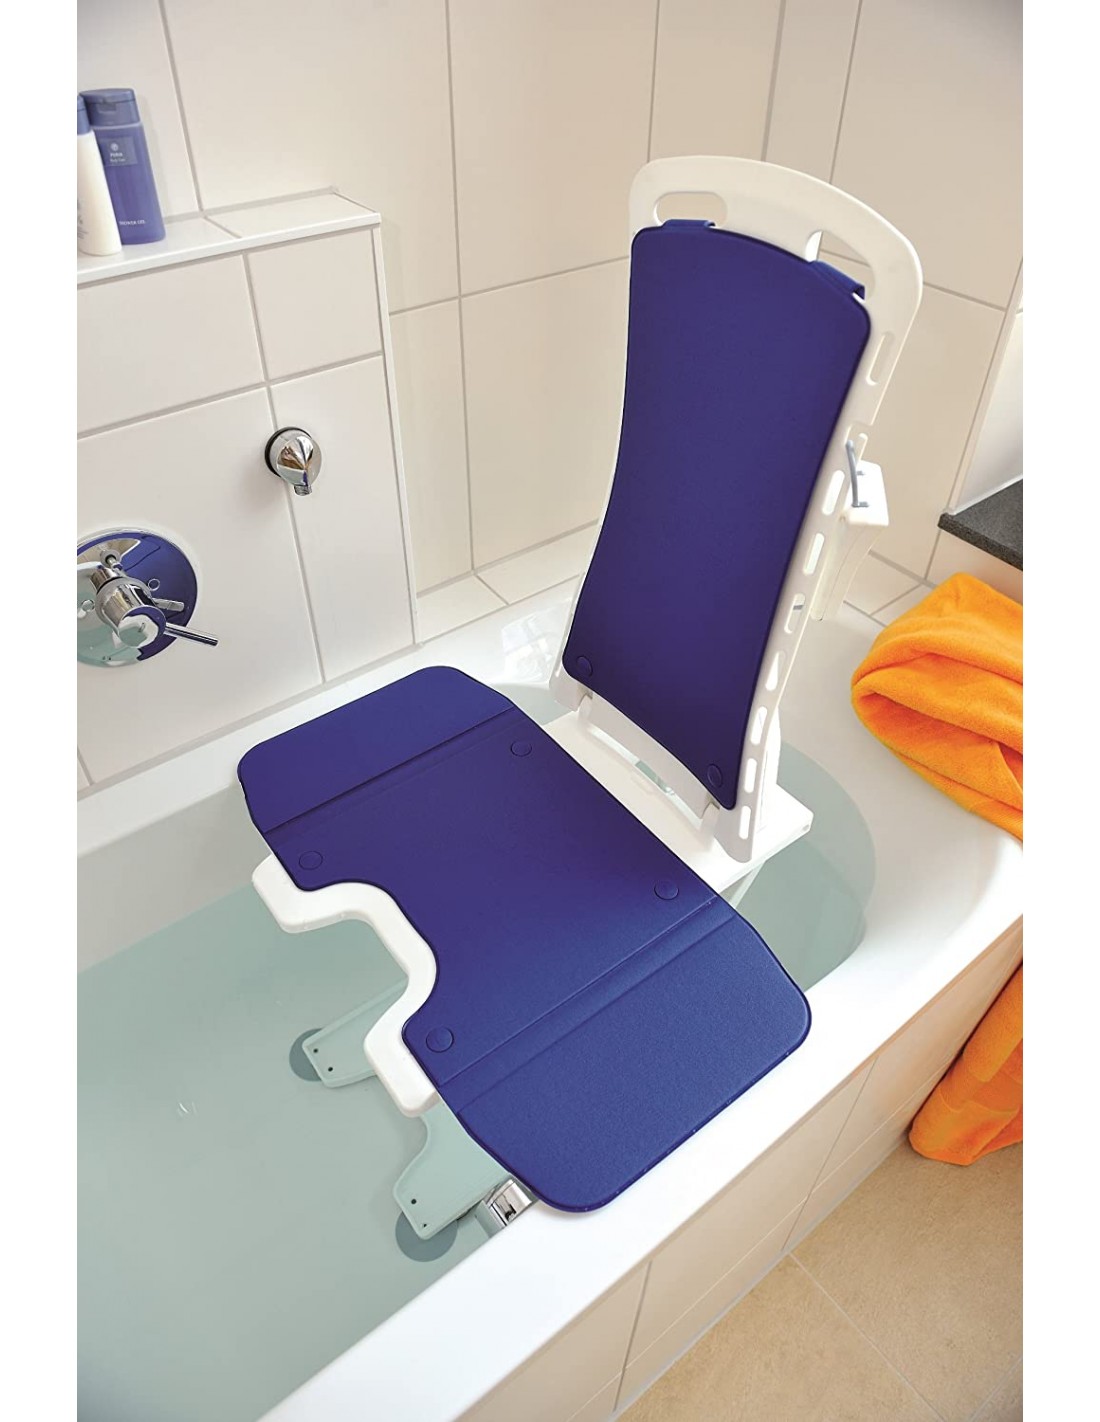 Sollevatore idrodinamico per vasca da bagno con sedia Pratica 93 - ser-ba